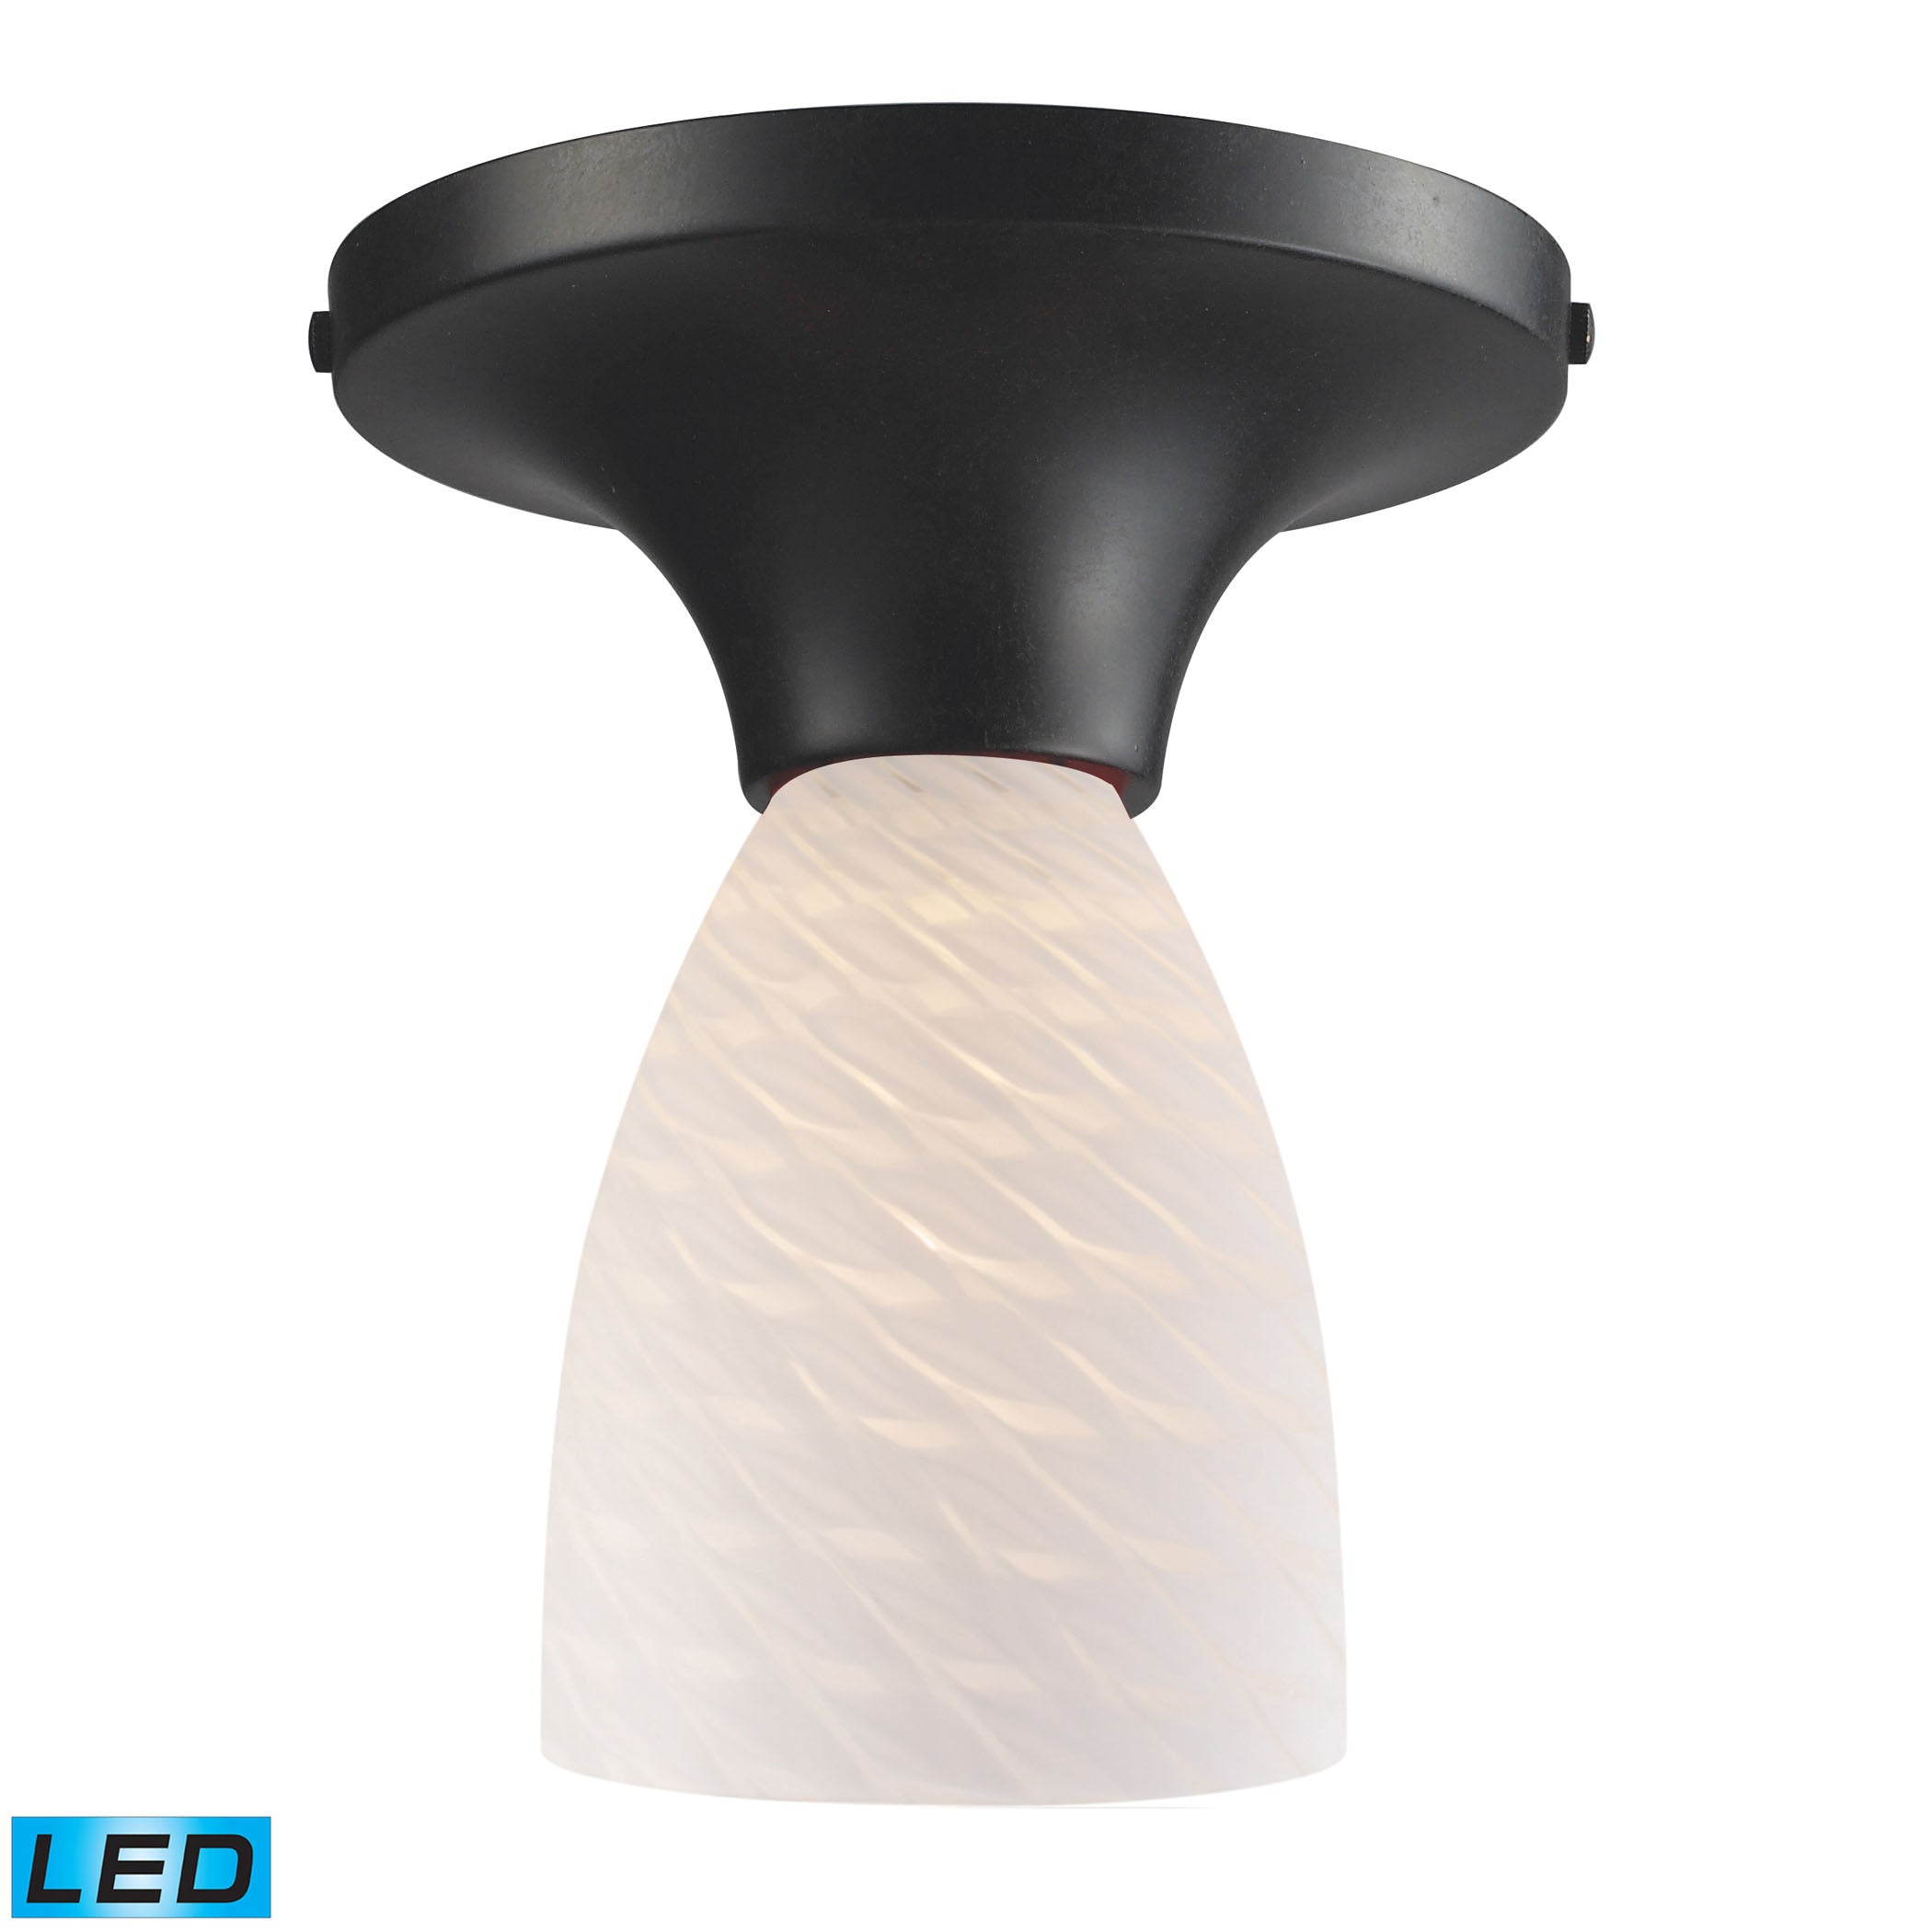 ELK Lighting 10152/1DR-WS-LED Celina 1-Light Semi Flush in Dark Rust with White Swirl Glass - Includes LED Bulb